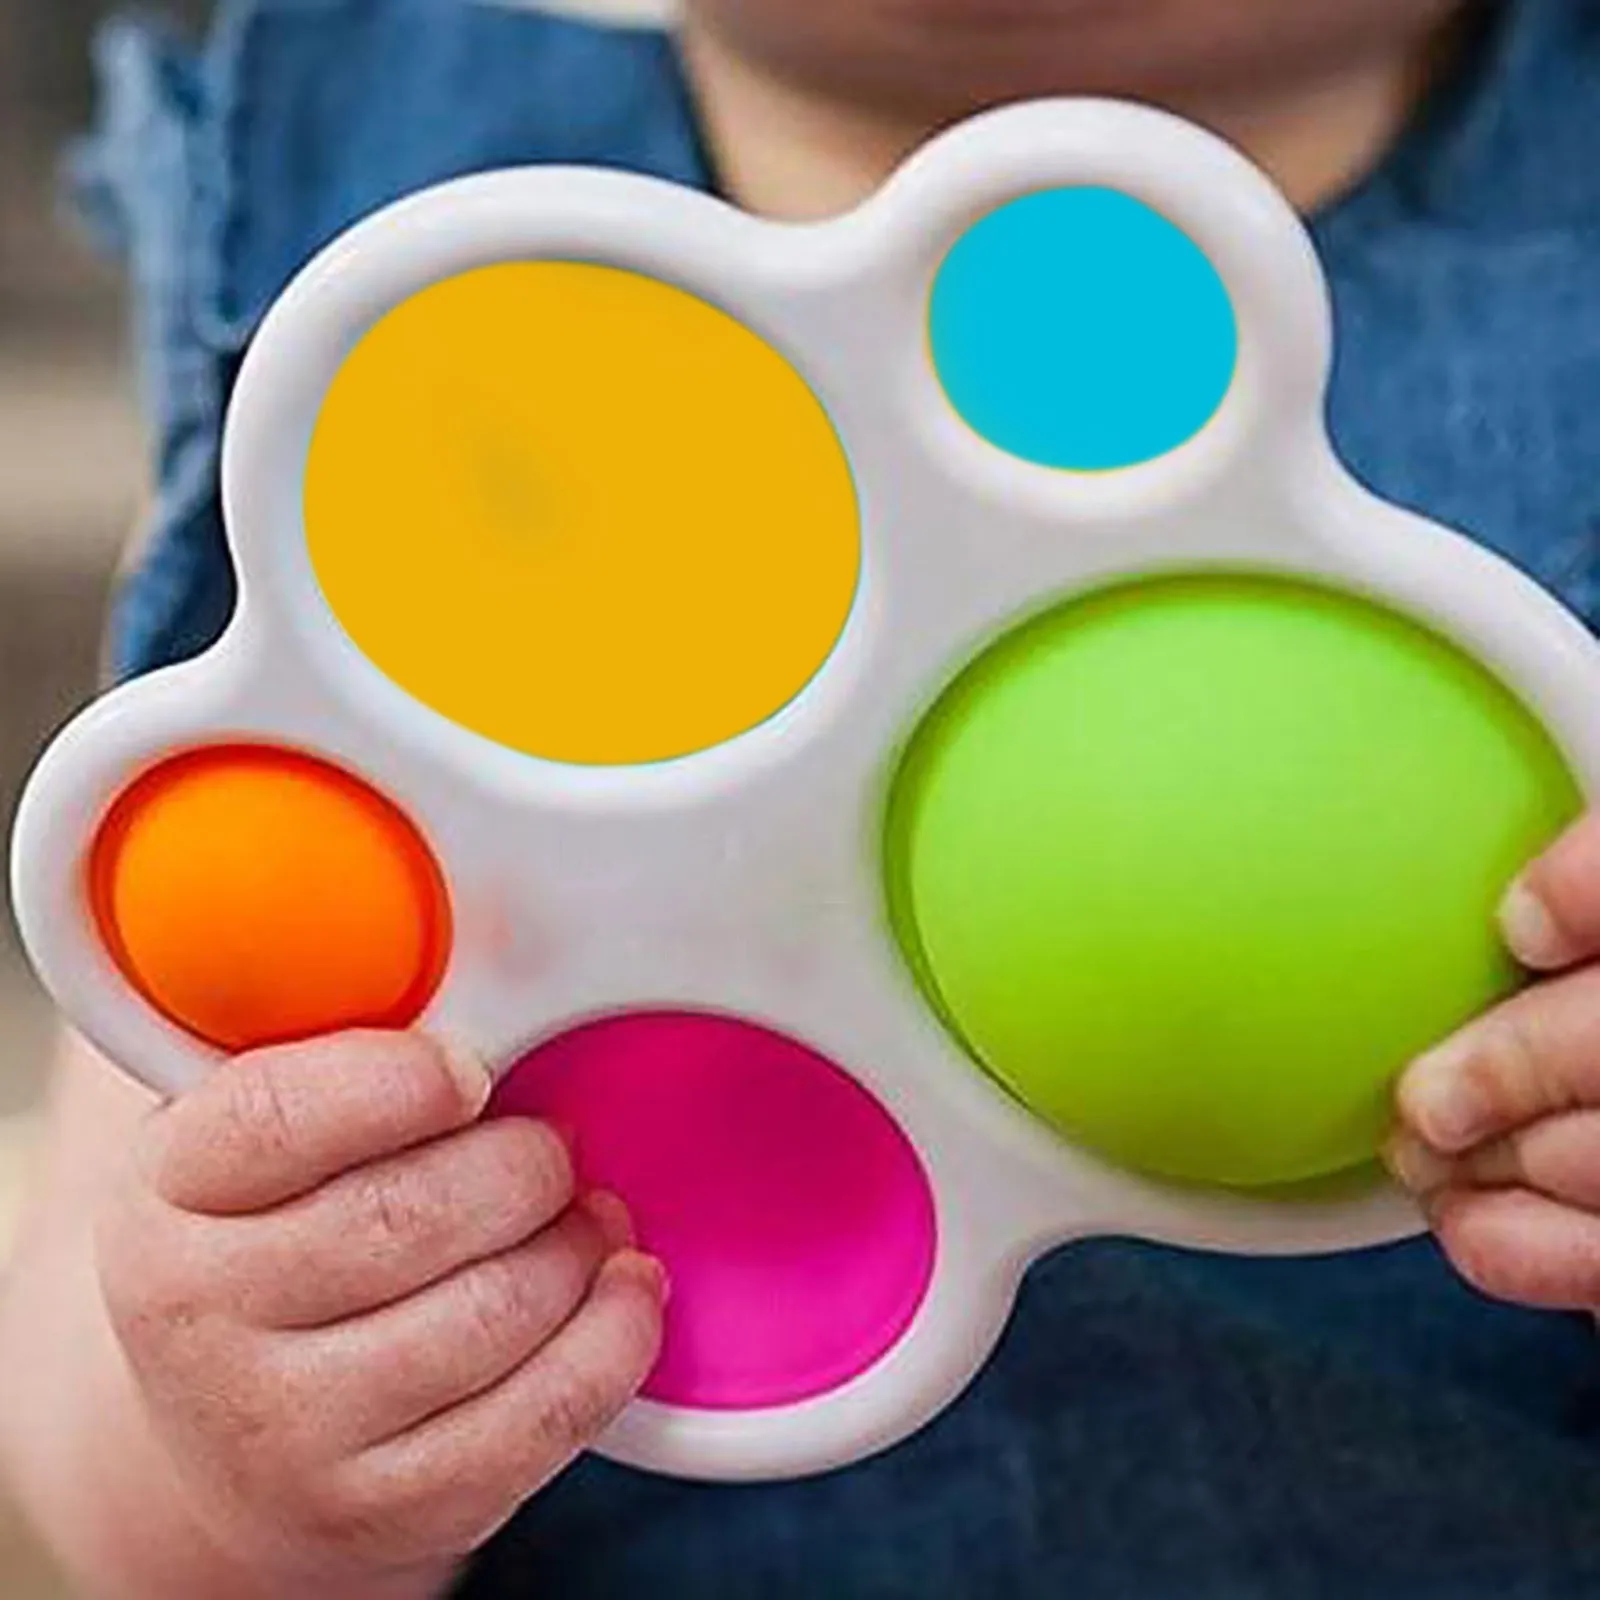 

2021 креативная игрушка для детей и взрослых, прибор для снятия давления, контроллер, игрушка-Антистресс, детский подарок для декомпрессии